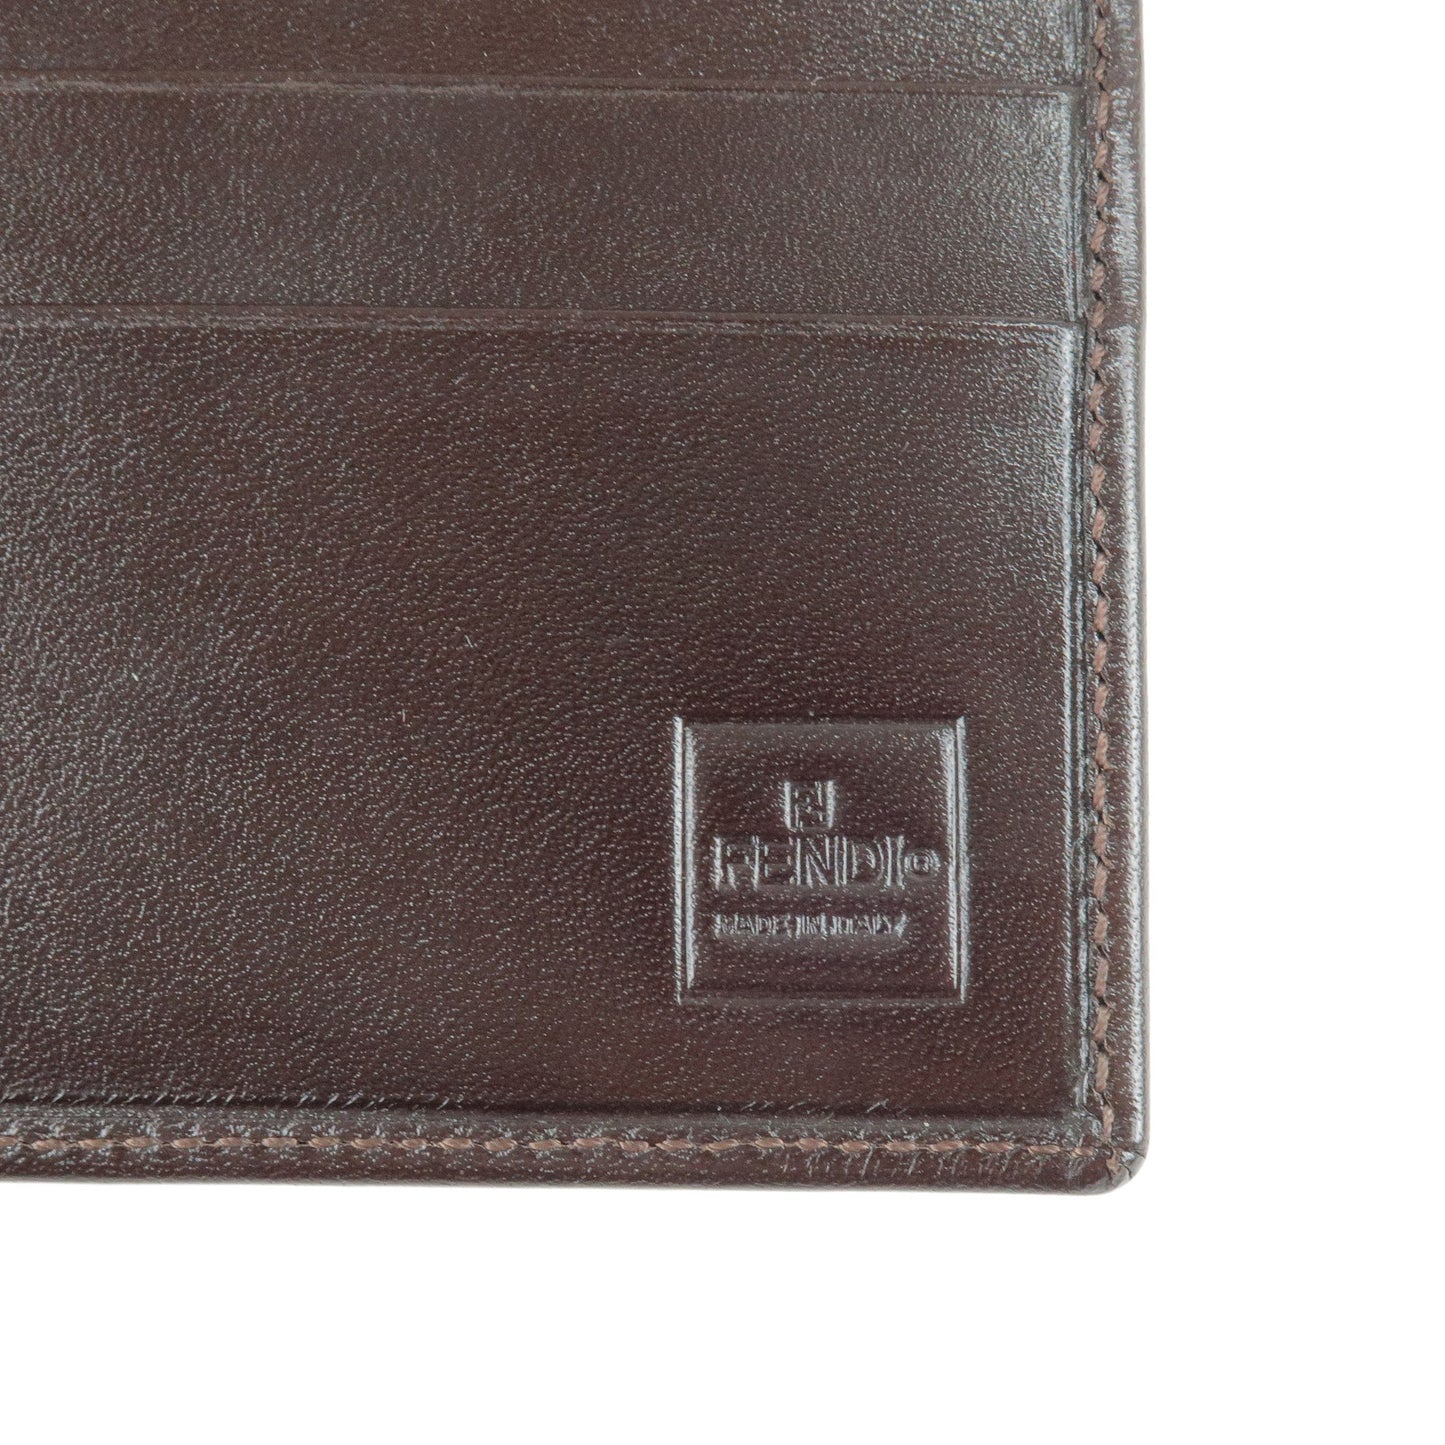 FENDI Zucca Canvas Leather Bi Fold Long Wallet Brown Khaki 01339